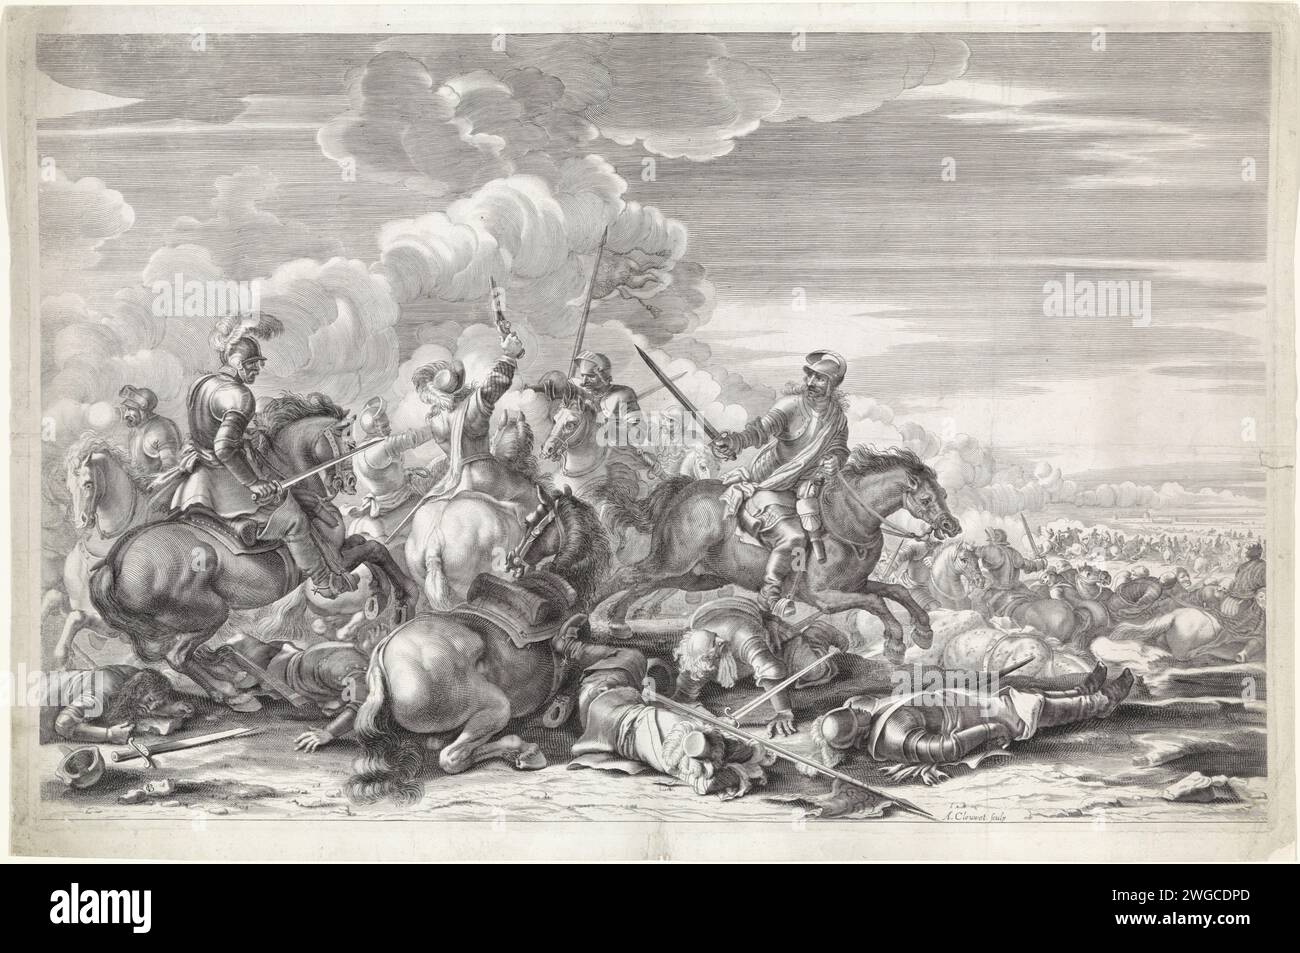 Cavaliavel, Albertus Clouds, al. Jacques courtois le Bourgguigon, 1646 - 1679 imprimer Un champ de bataille. Au premier plan, deux unités de cavalerie combattent une escarmouche. Plusieurs coureurs ont déjà été tués. Bataille de gravure sur papier Rome (+ cavalerie, cavalerie) Banque D'Images